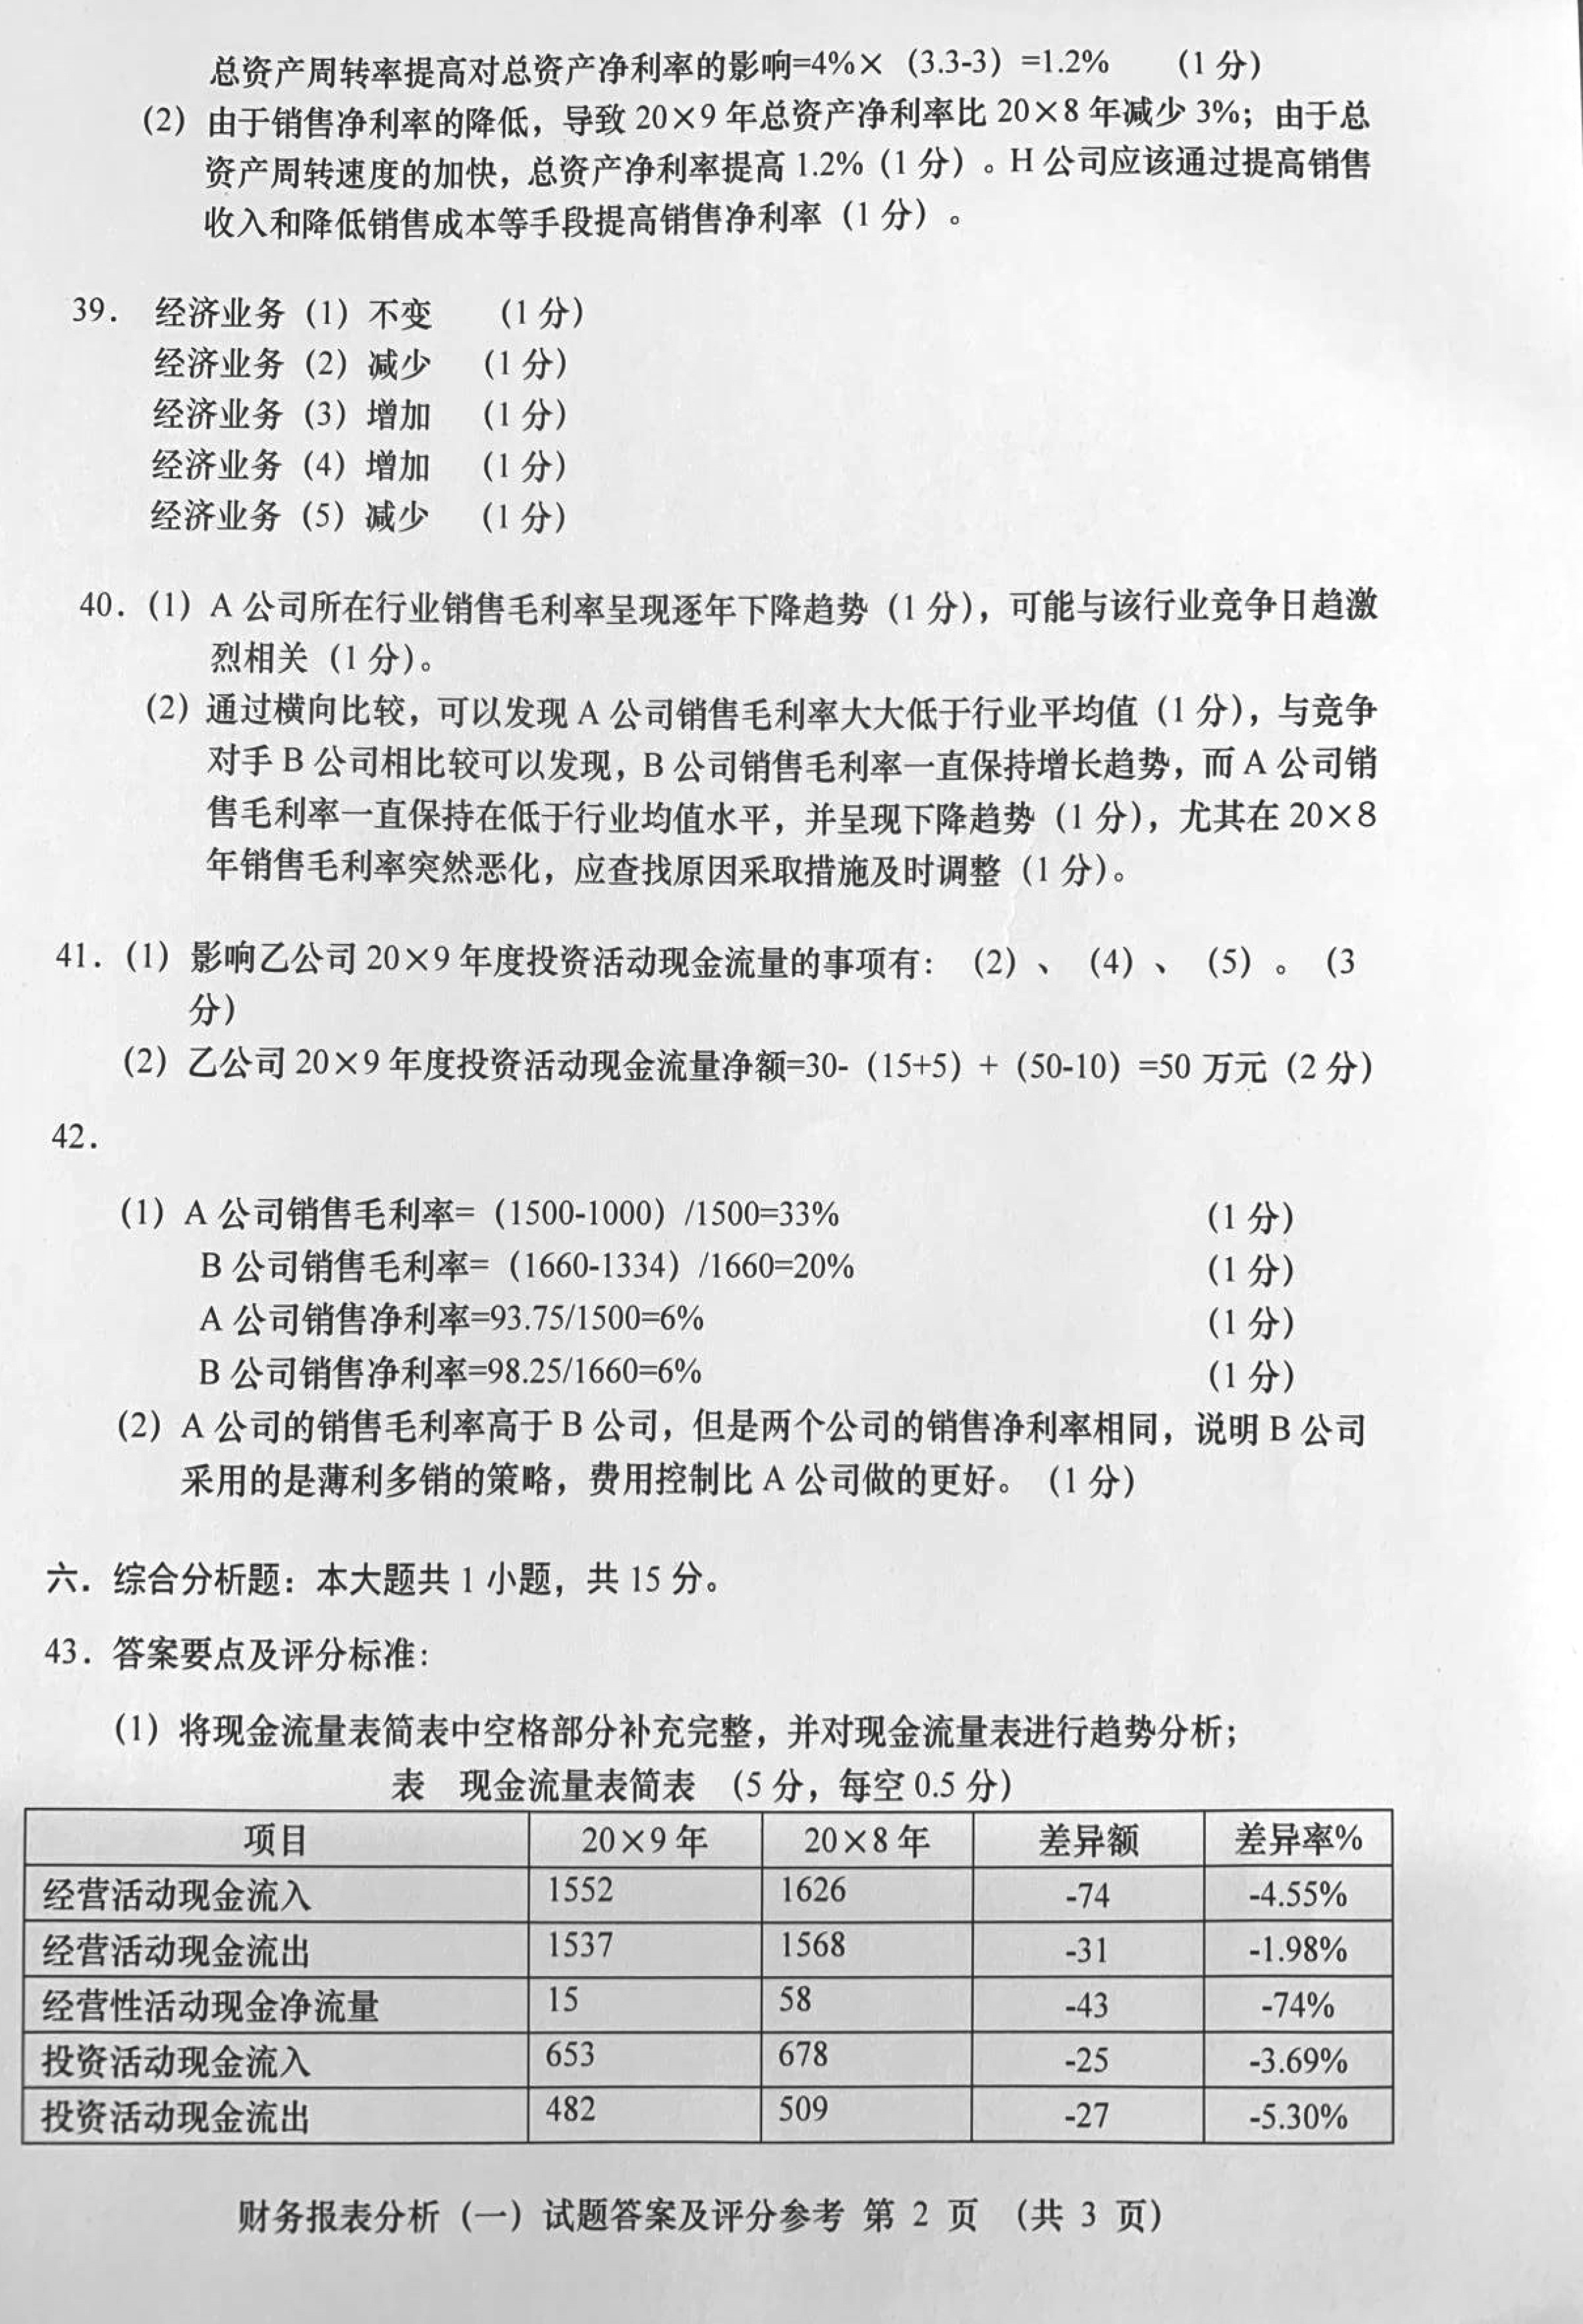 贵州省2019年10月自学考试00161财务报表分析真题及答案